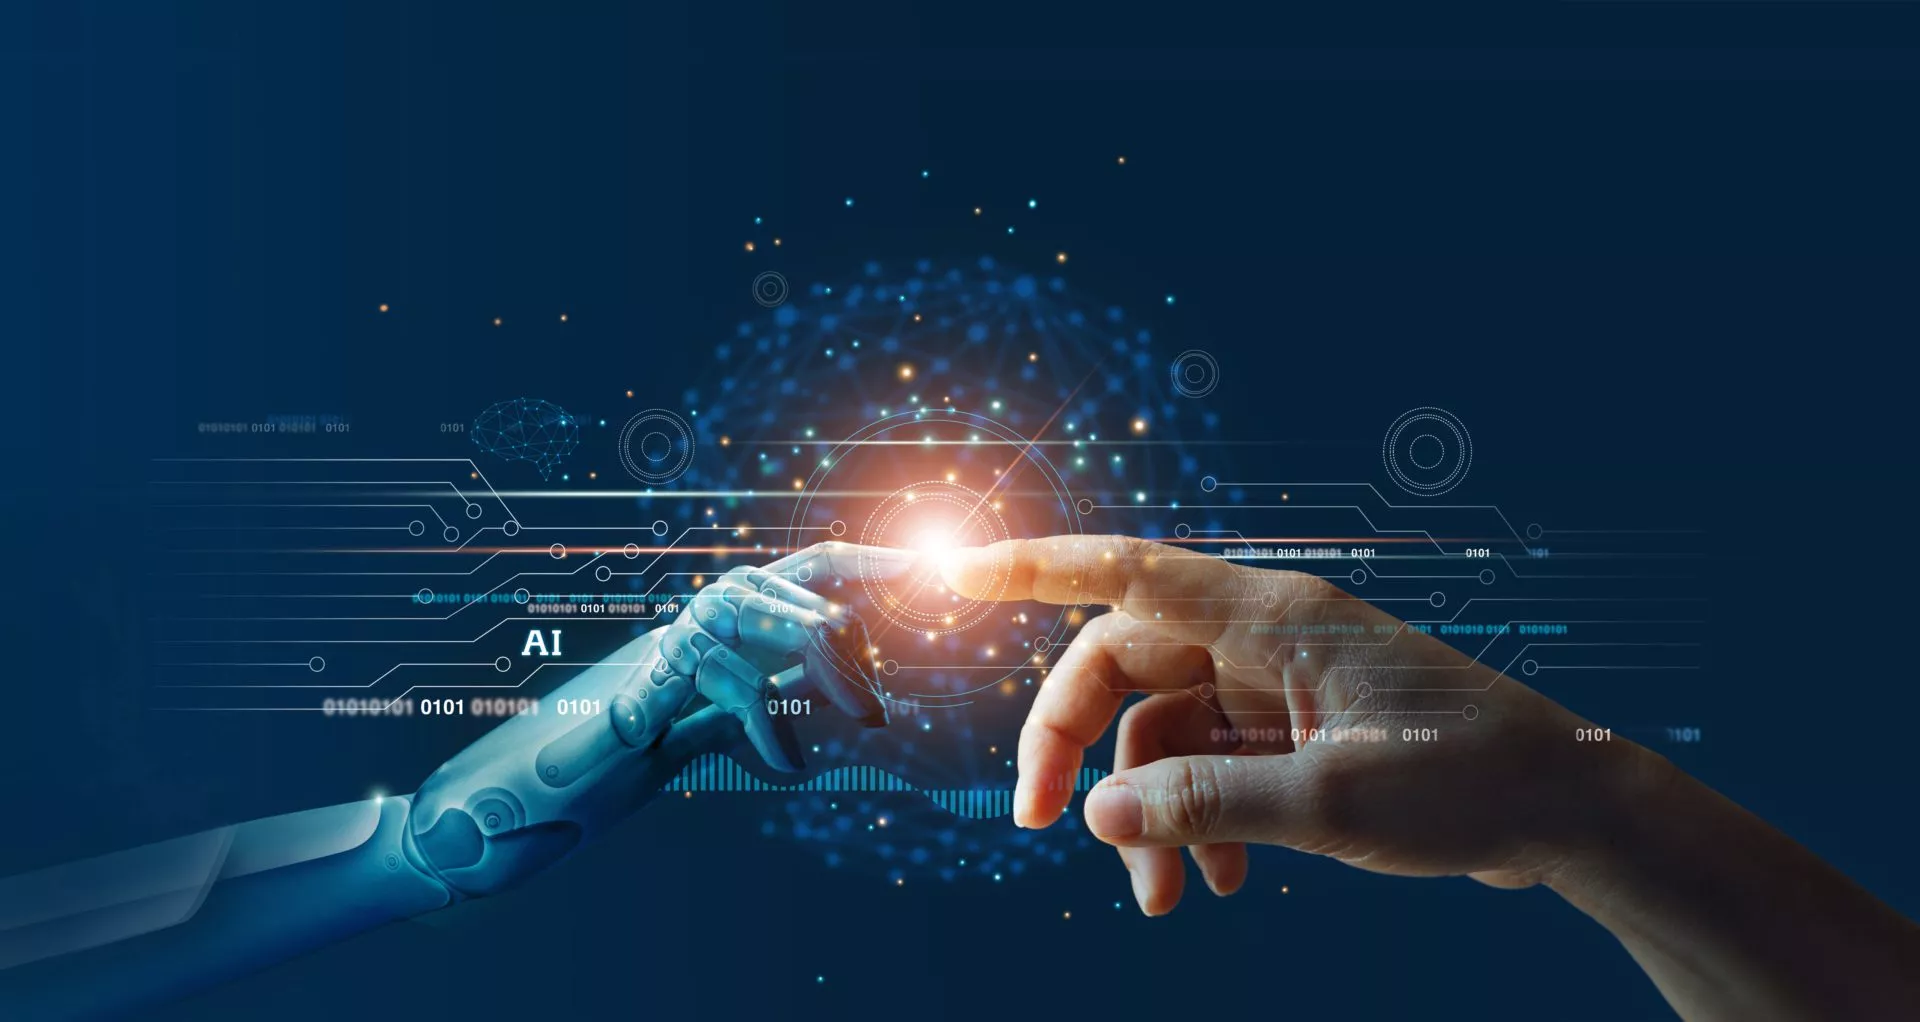 De rol van kunstmatige intelligentie in financiën en handel: Voordelen, uitdagingen en zorgen